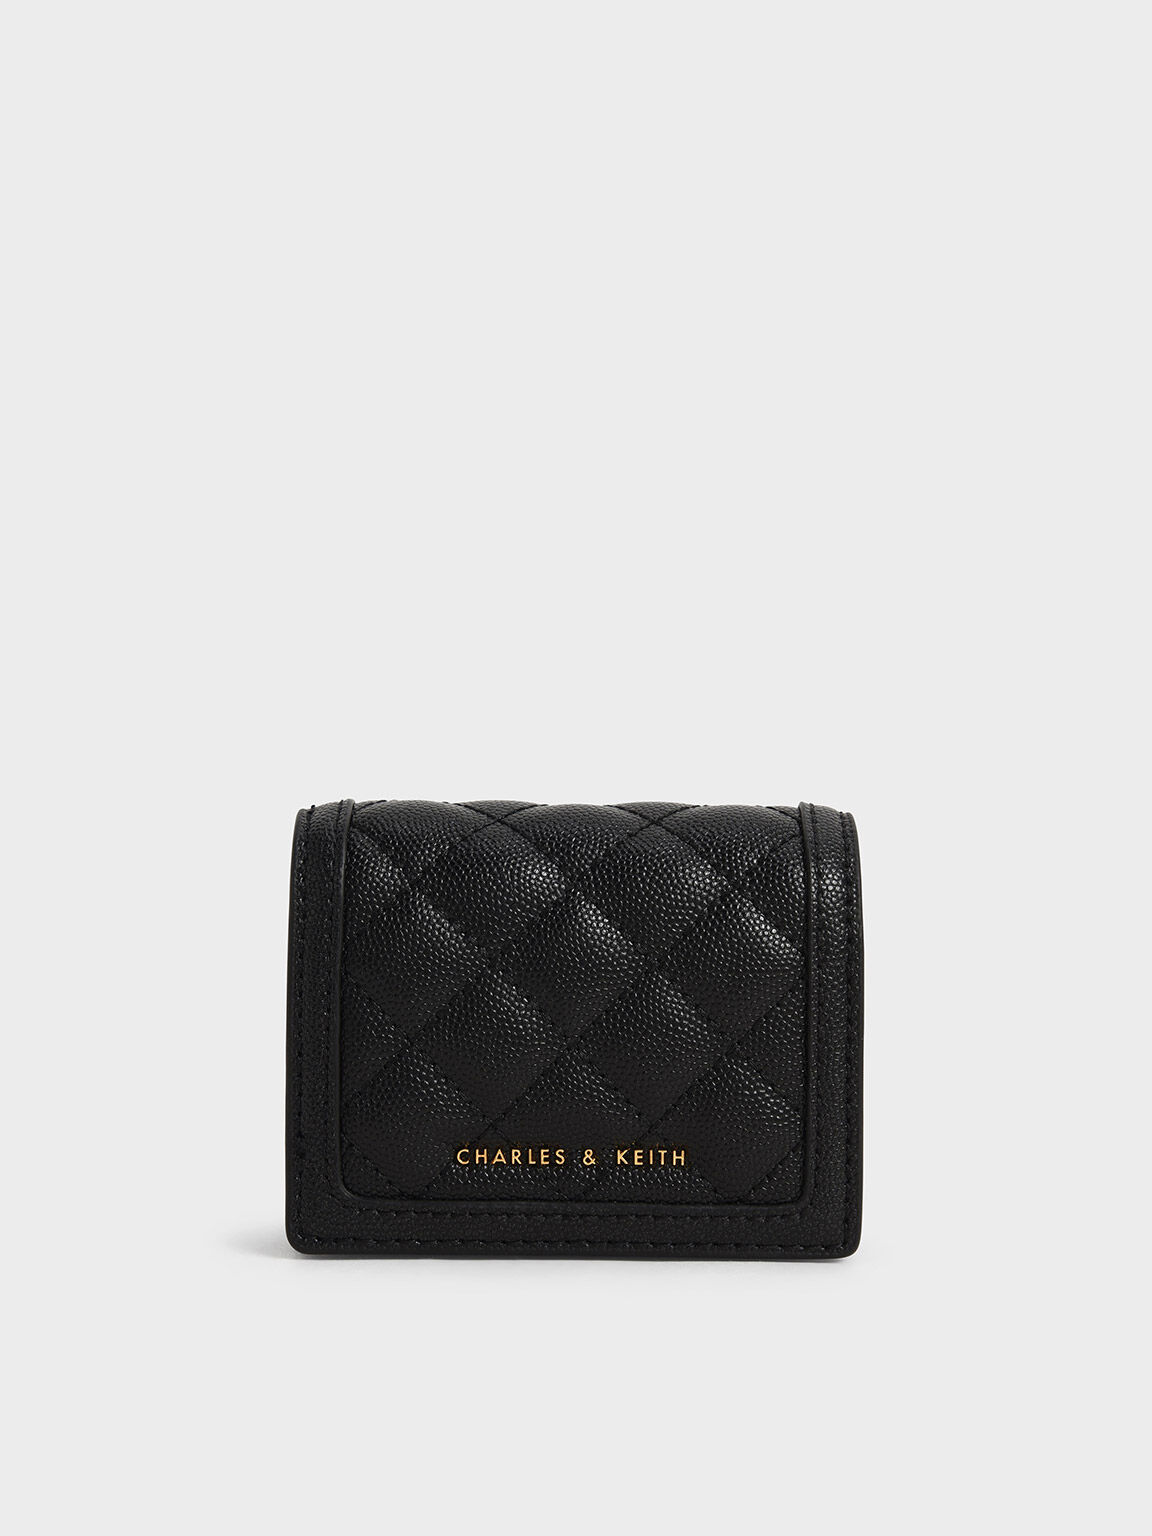 Louis Vuitton black should bag $ - PW Merry-Go-Round